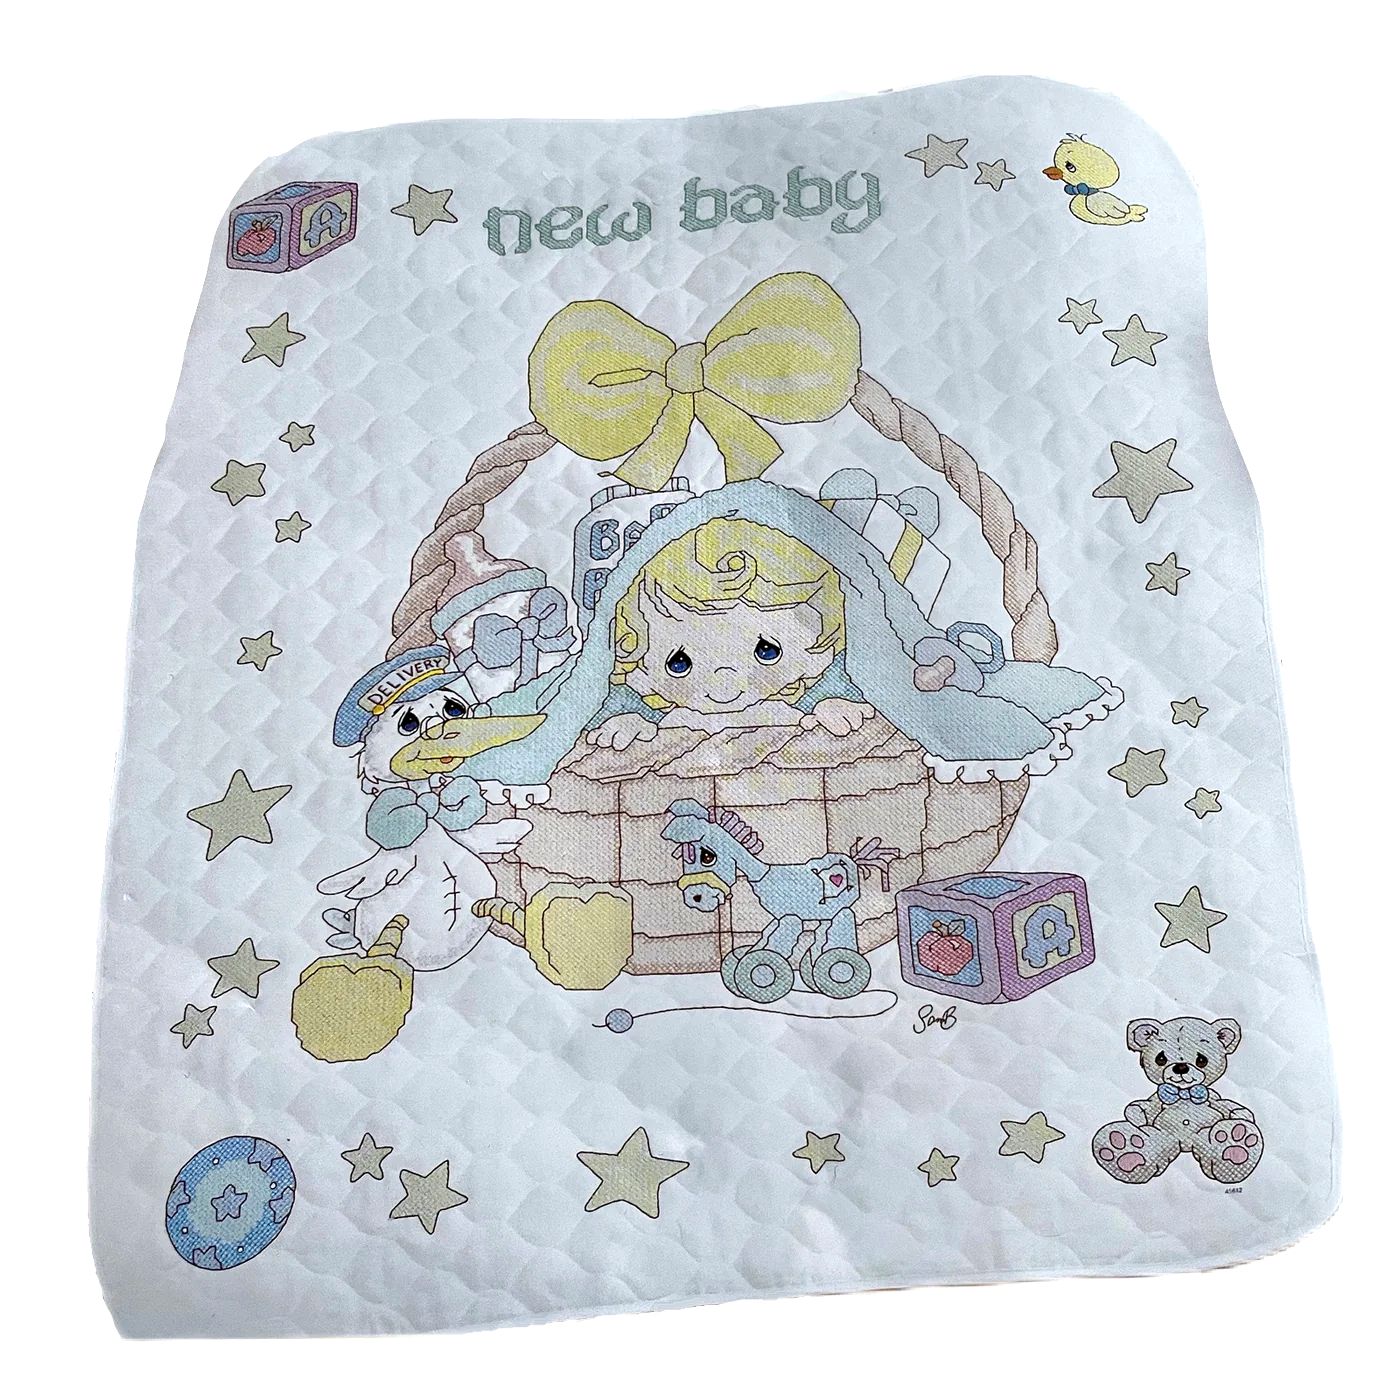 Bucilla Baby Stamped Cross Stitch Crib Cover, 45612 Precious Moments